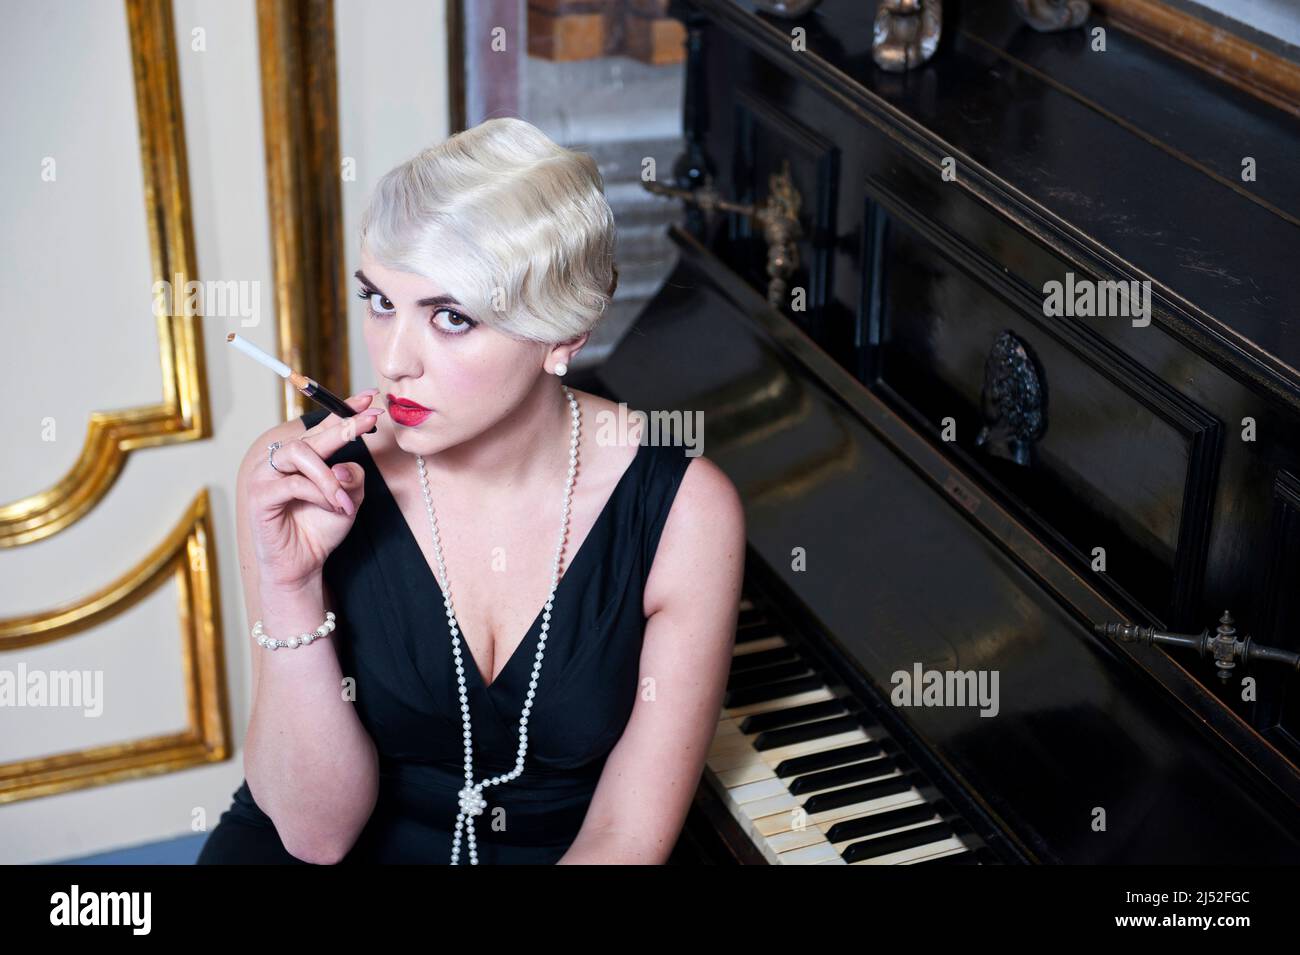 retro style elegant women smoking with mouthpiece next to a grand piano Stock Photo